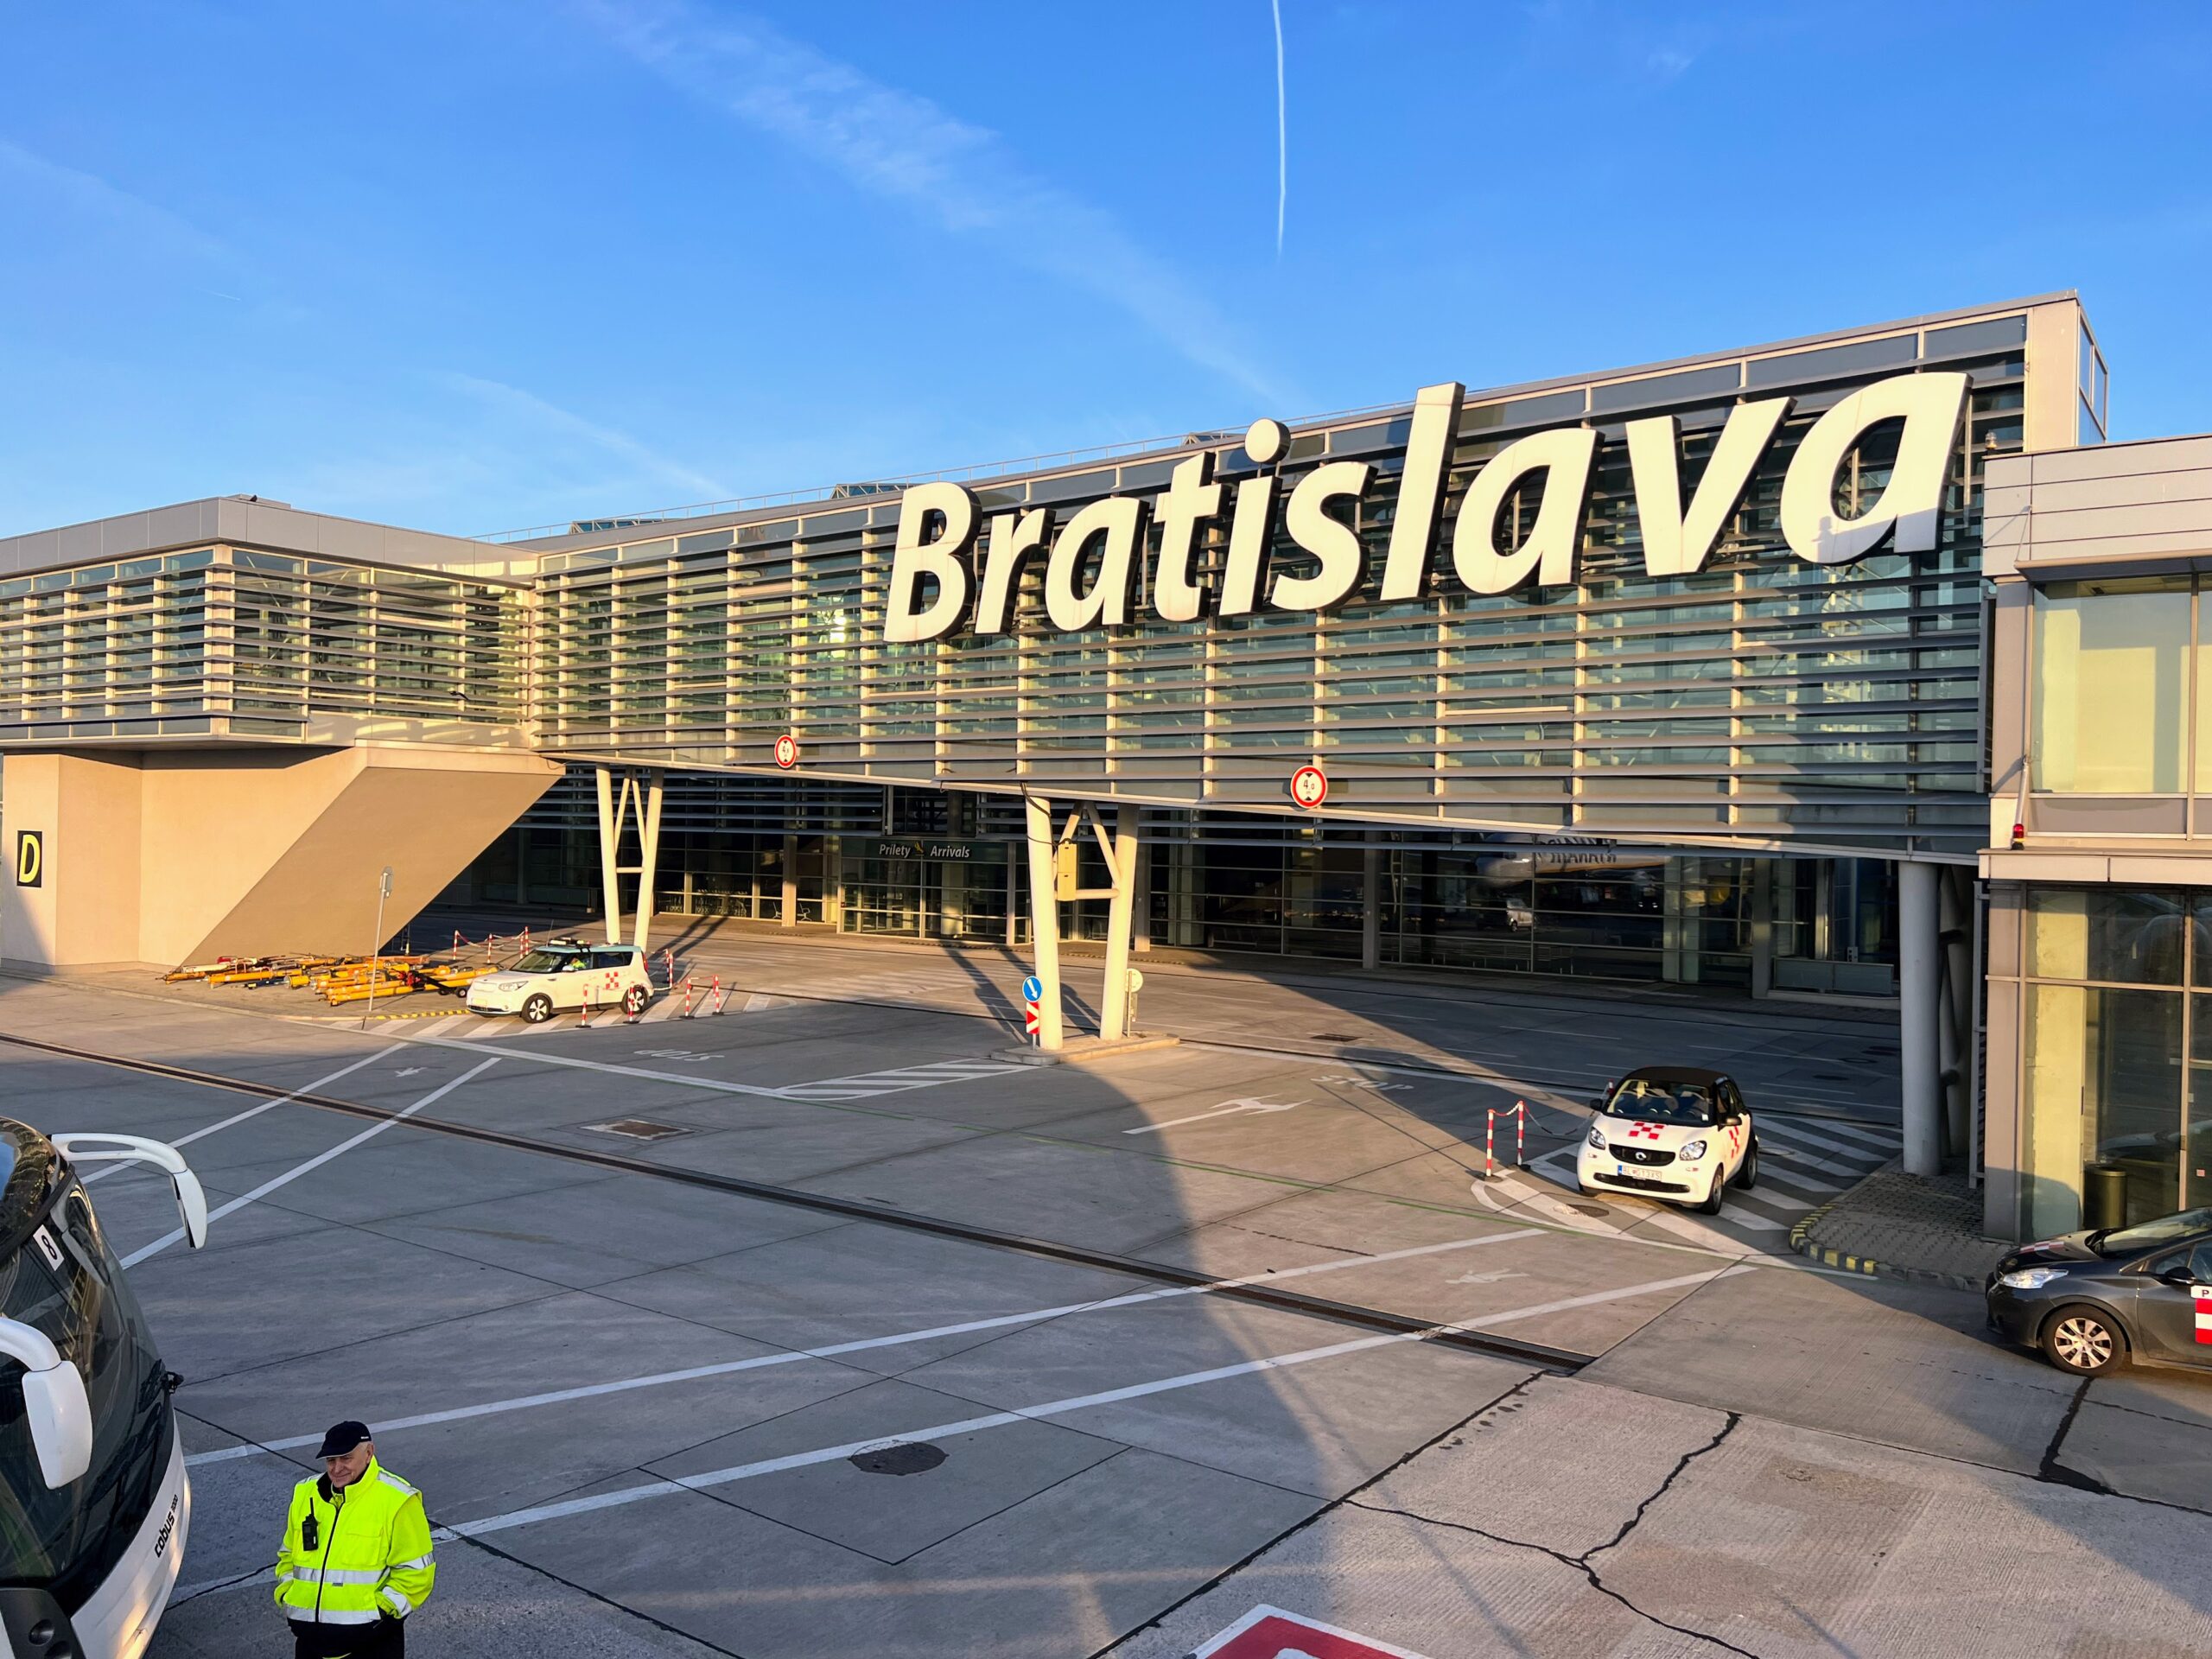 летище братислава bratislava